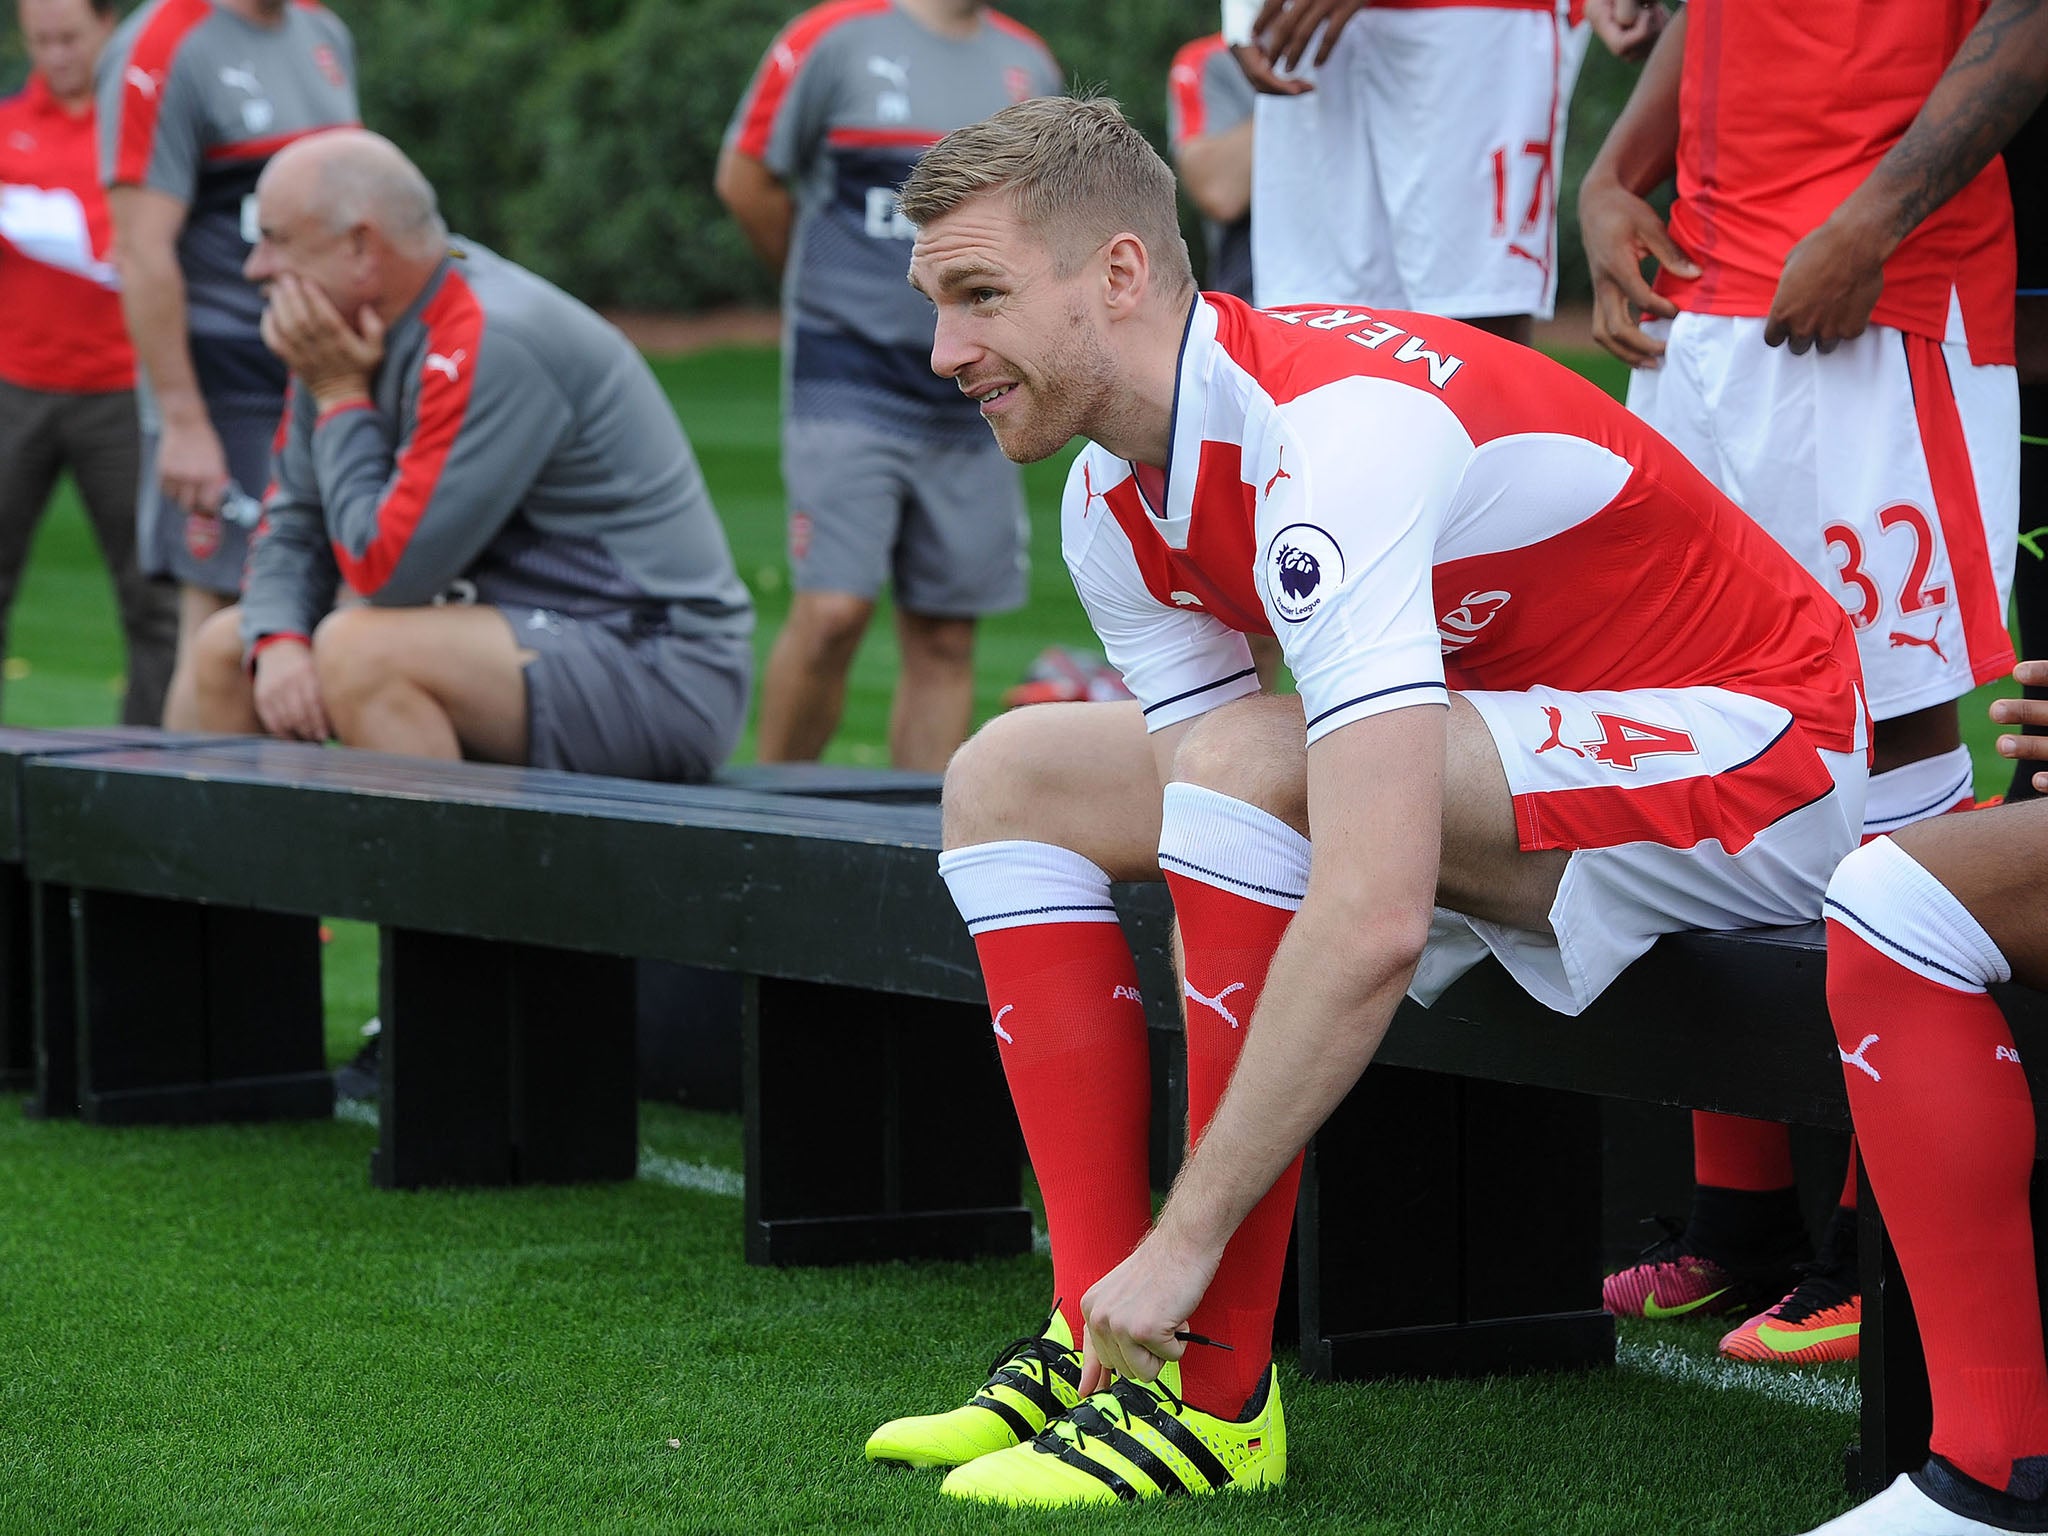 Mertesacker was named Arsenal captain in August